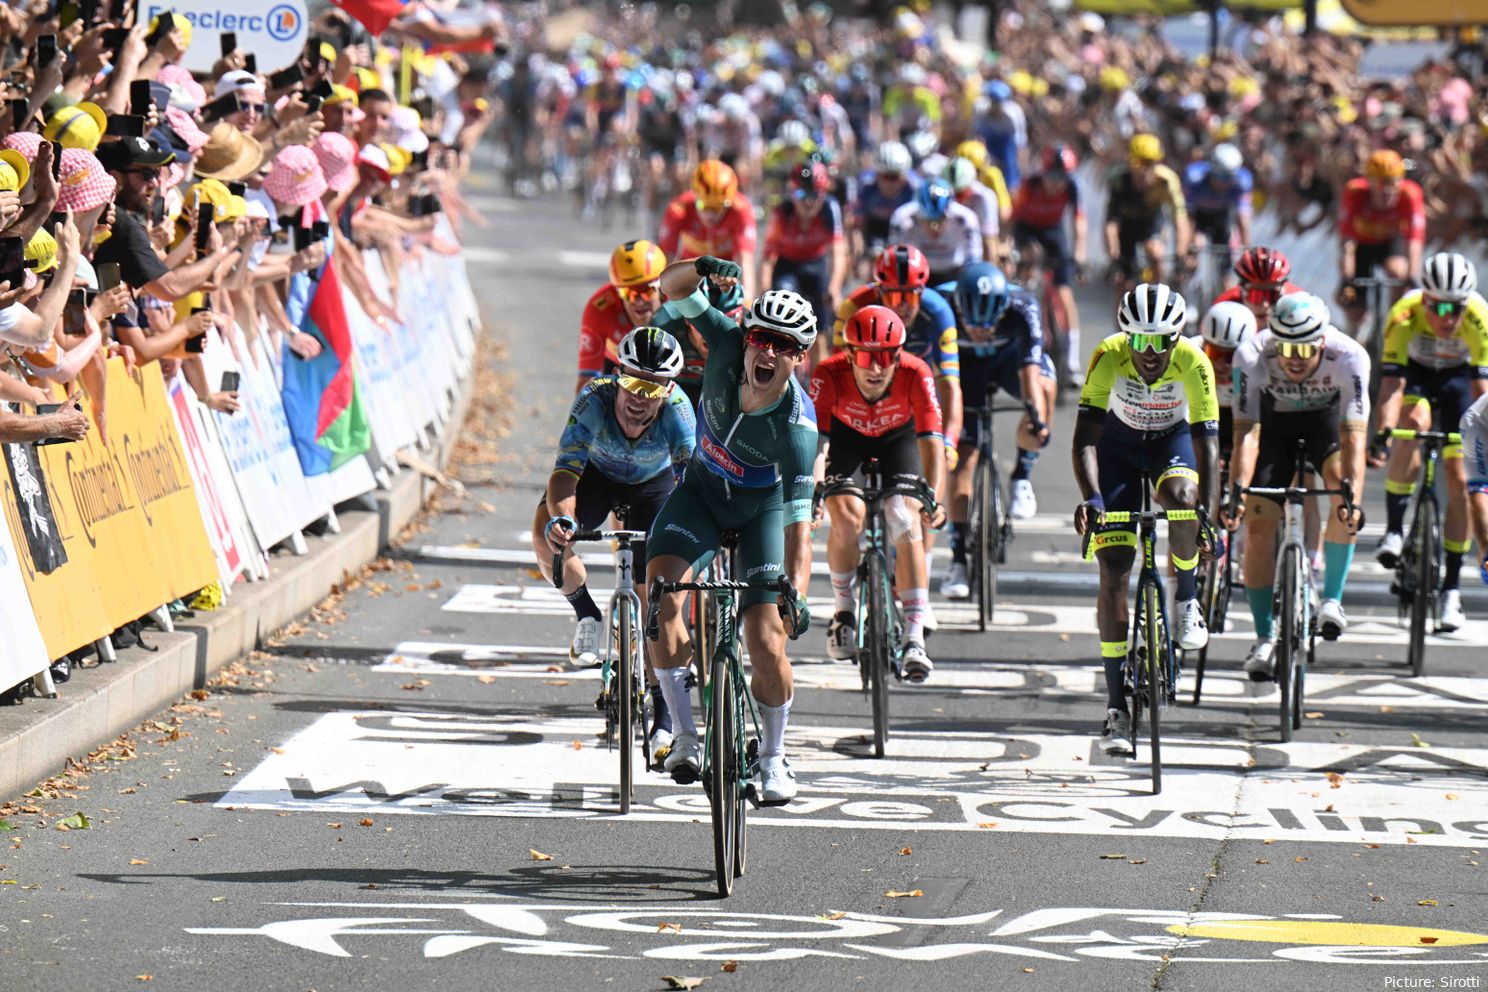 ANÁLISE - Toda a equipa do CiclismoAtual fala sobre a Volta a França de 2024: Pensamentos sobre o vencedor; Pogacar; Vingegaard; Evenepoel; Roglic e mais